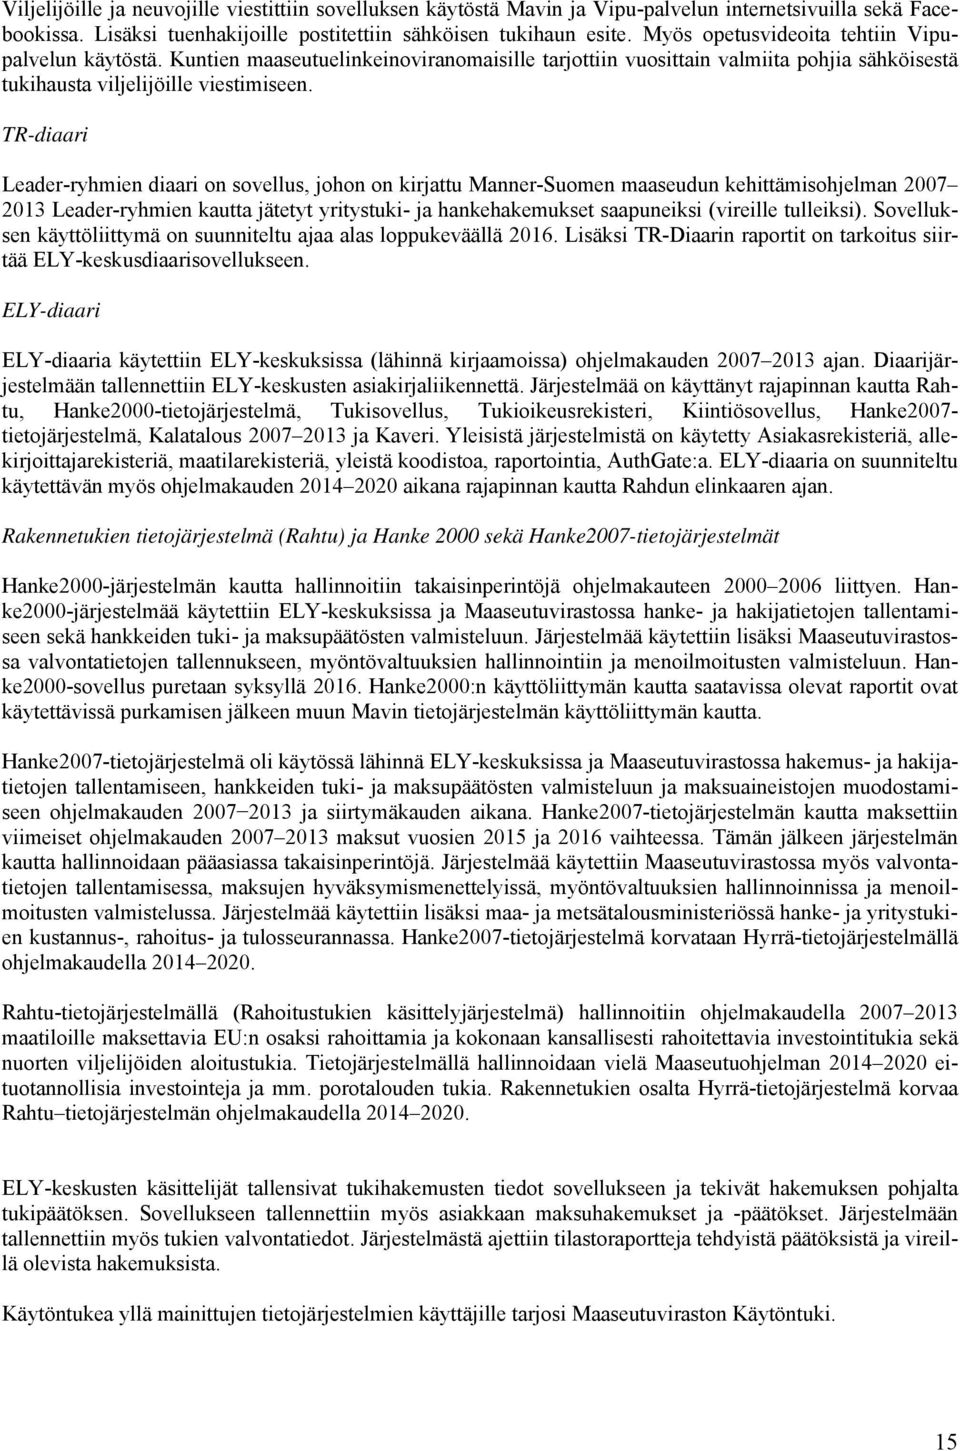 TR-diaari Leader-ryhmien diaari on sovellus, johon on kirjattu Manner-Suomen maaseudun kehittämisohjelman 2007 2013 Leader-ryhmien kautta jätetyt yritystuki- ja hankehakemukset saapuneiksi (vireille